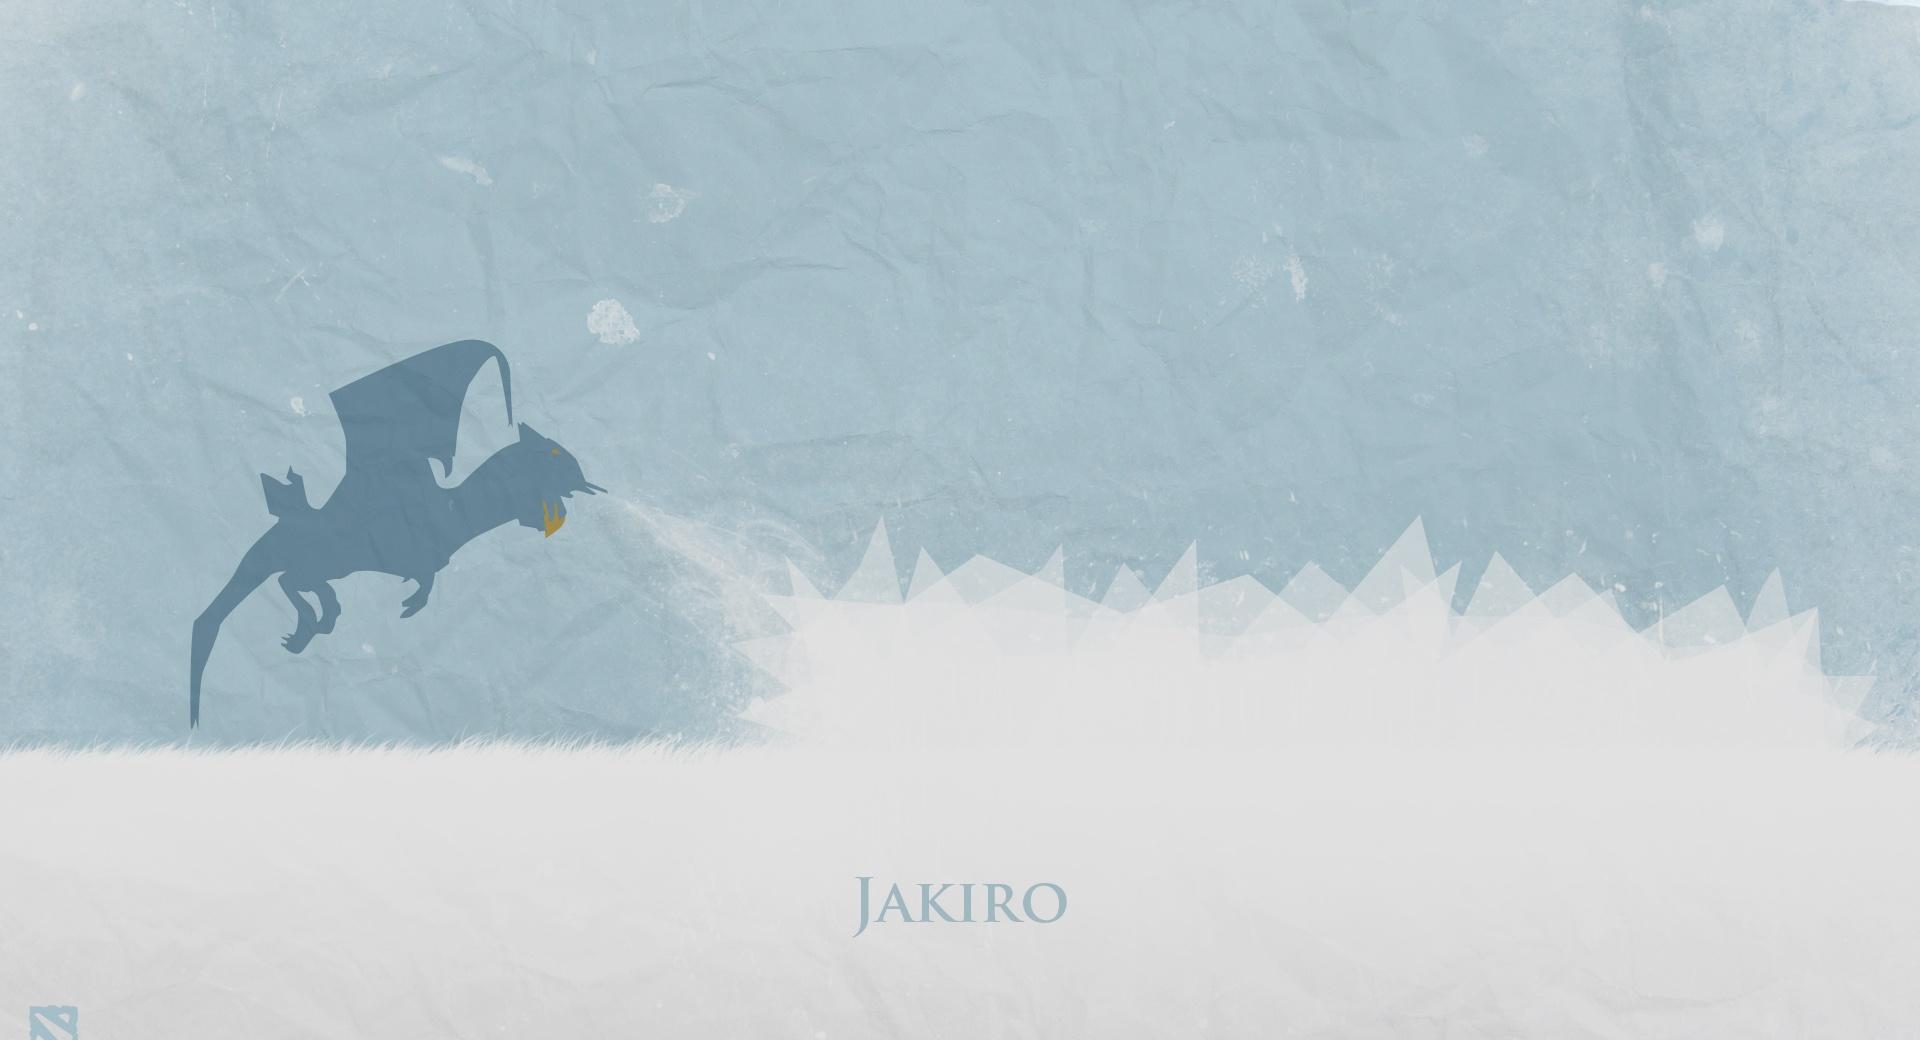 Jakiro - DotA 2 at 1280 x 960 size wallpapers HD quality